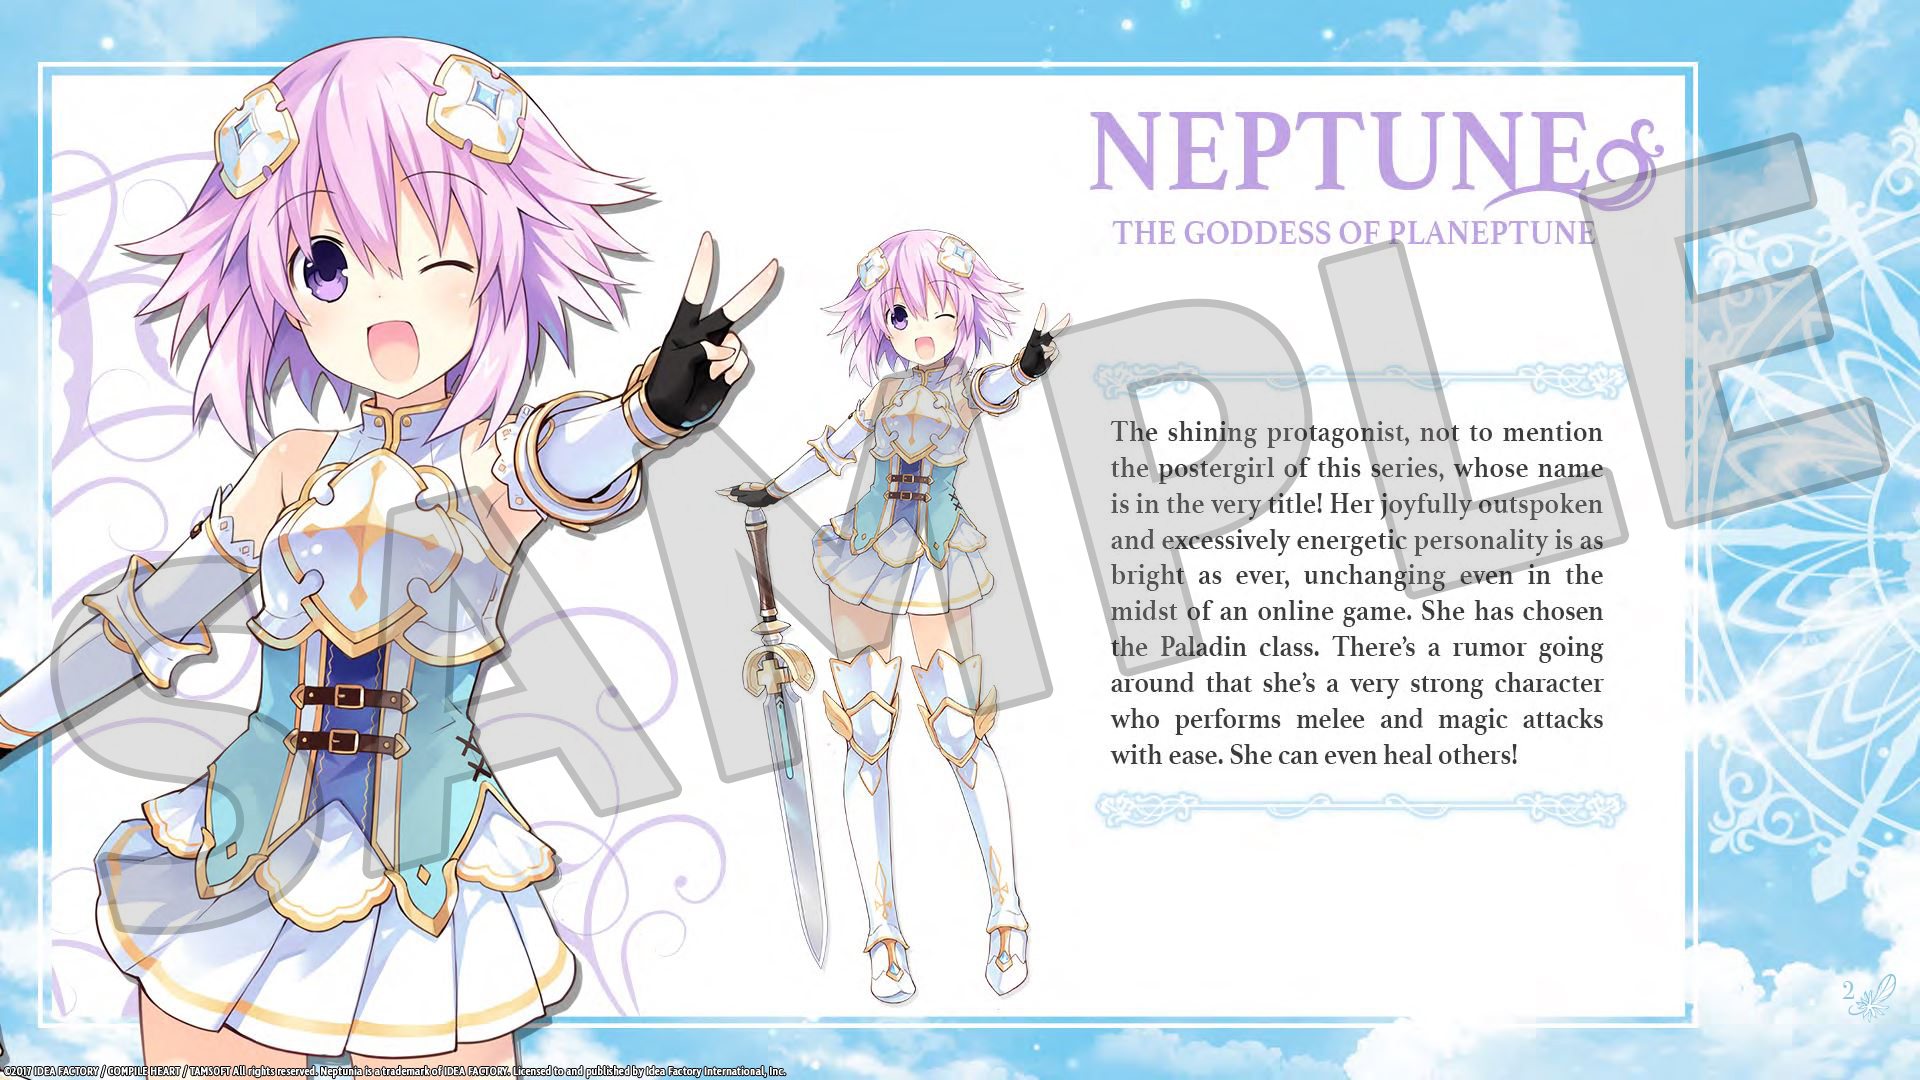 Cyberdimension Neptunia: 4 Goddesses Online - Deluxe Pack DLC Steam CD Key USD 1.69